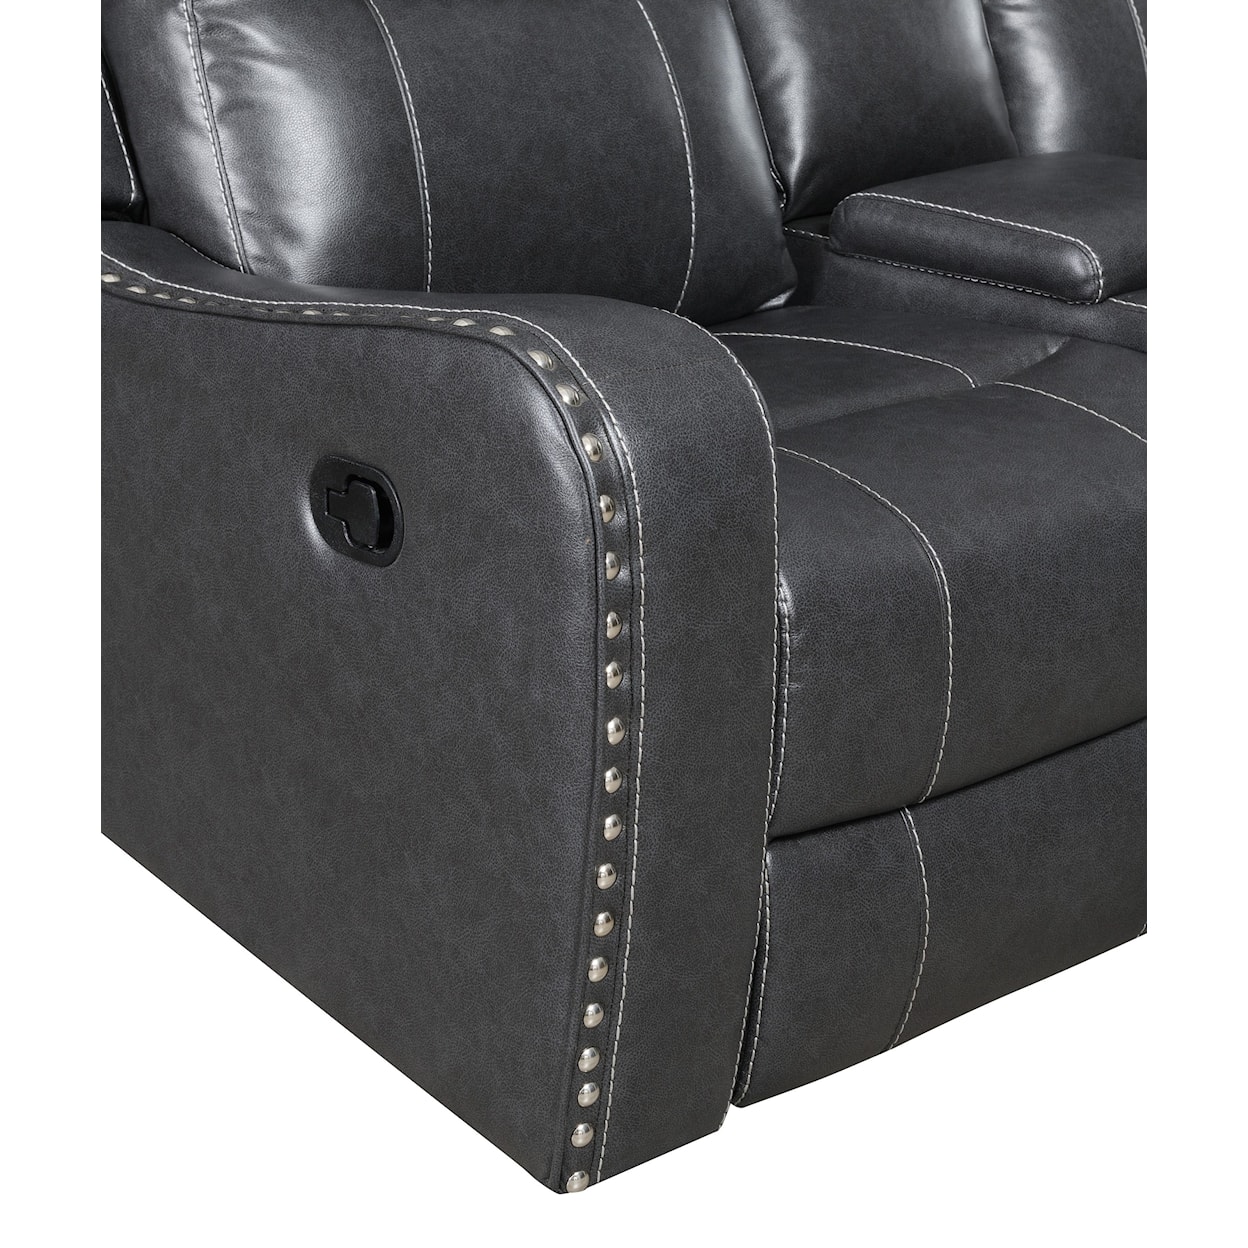 Global Furniture U131 Console Reclining Loveseat Dark Grey